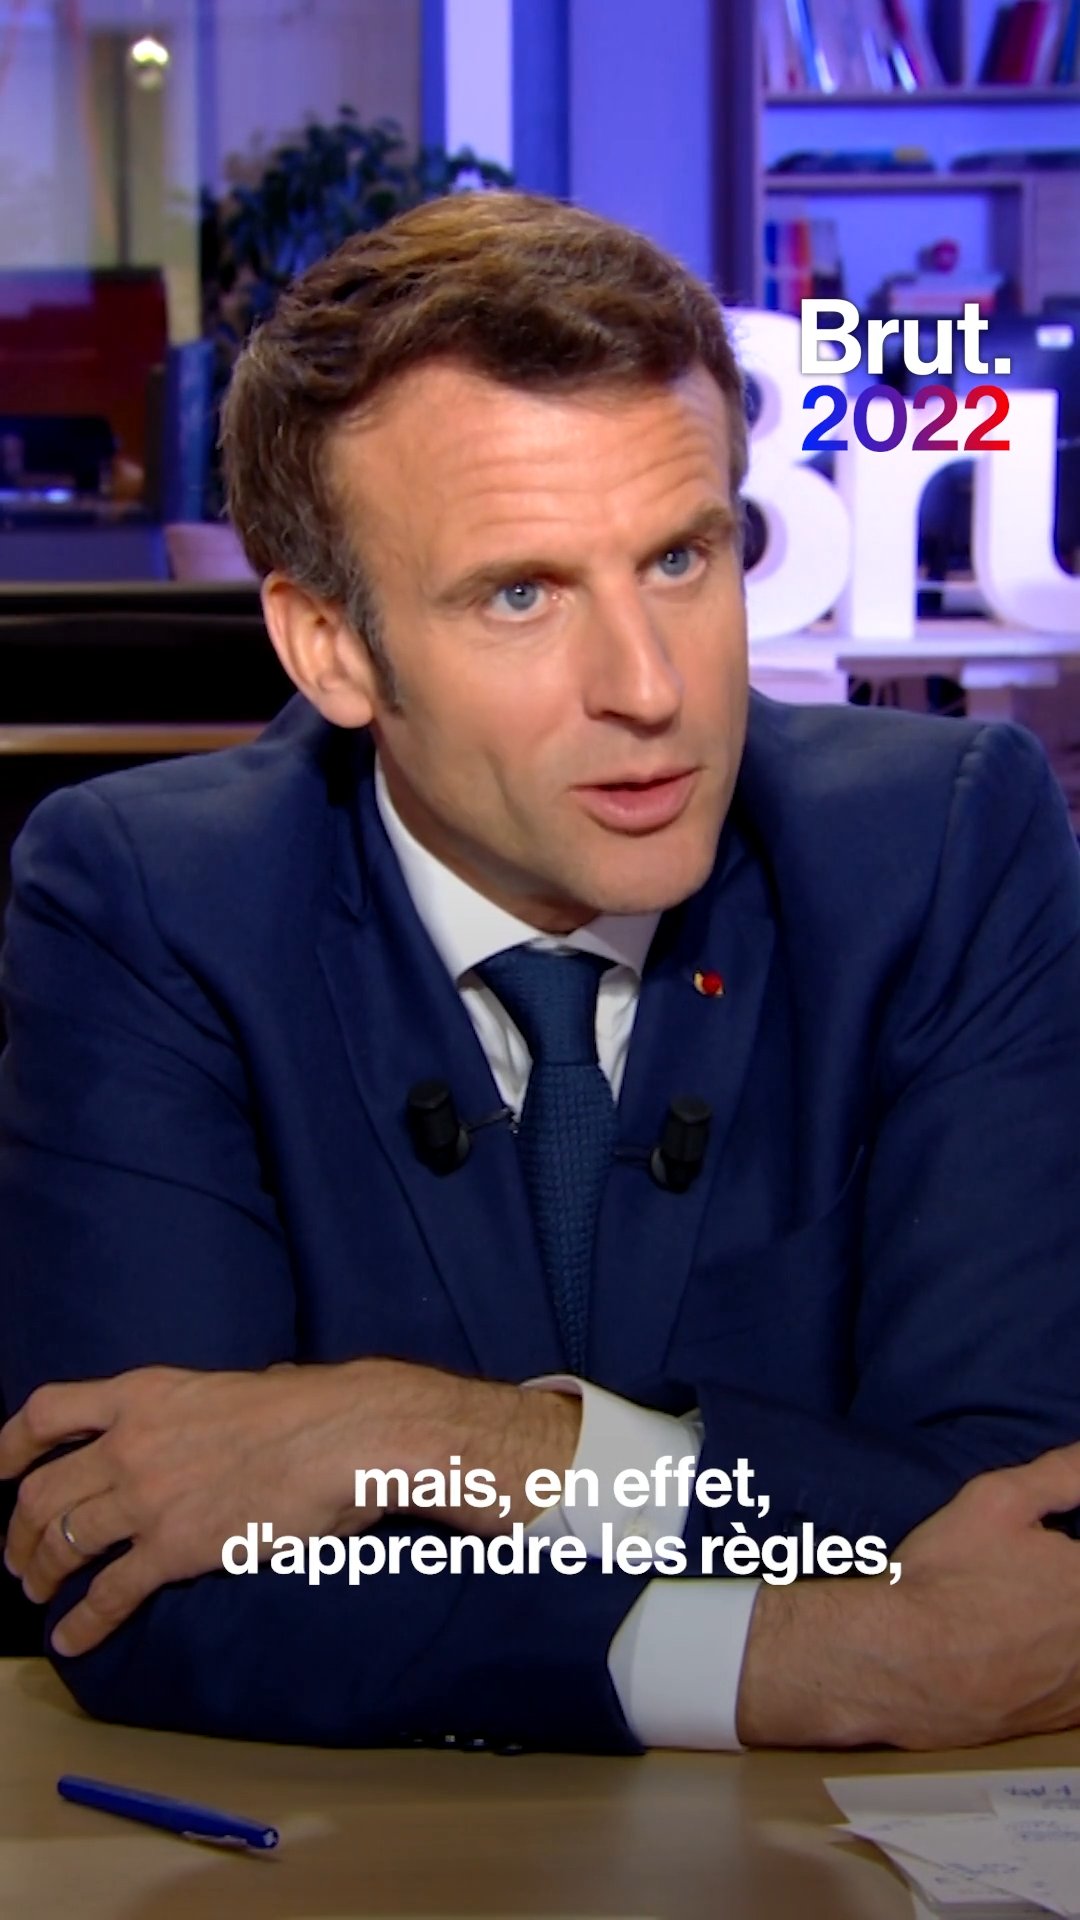 Présidentielle 2022 : Emmanuel Macron vs Marine Le Pen